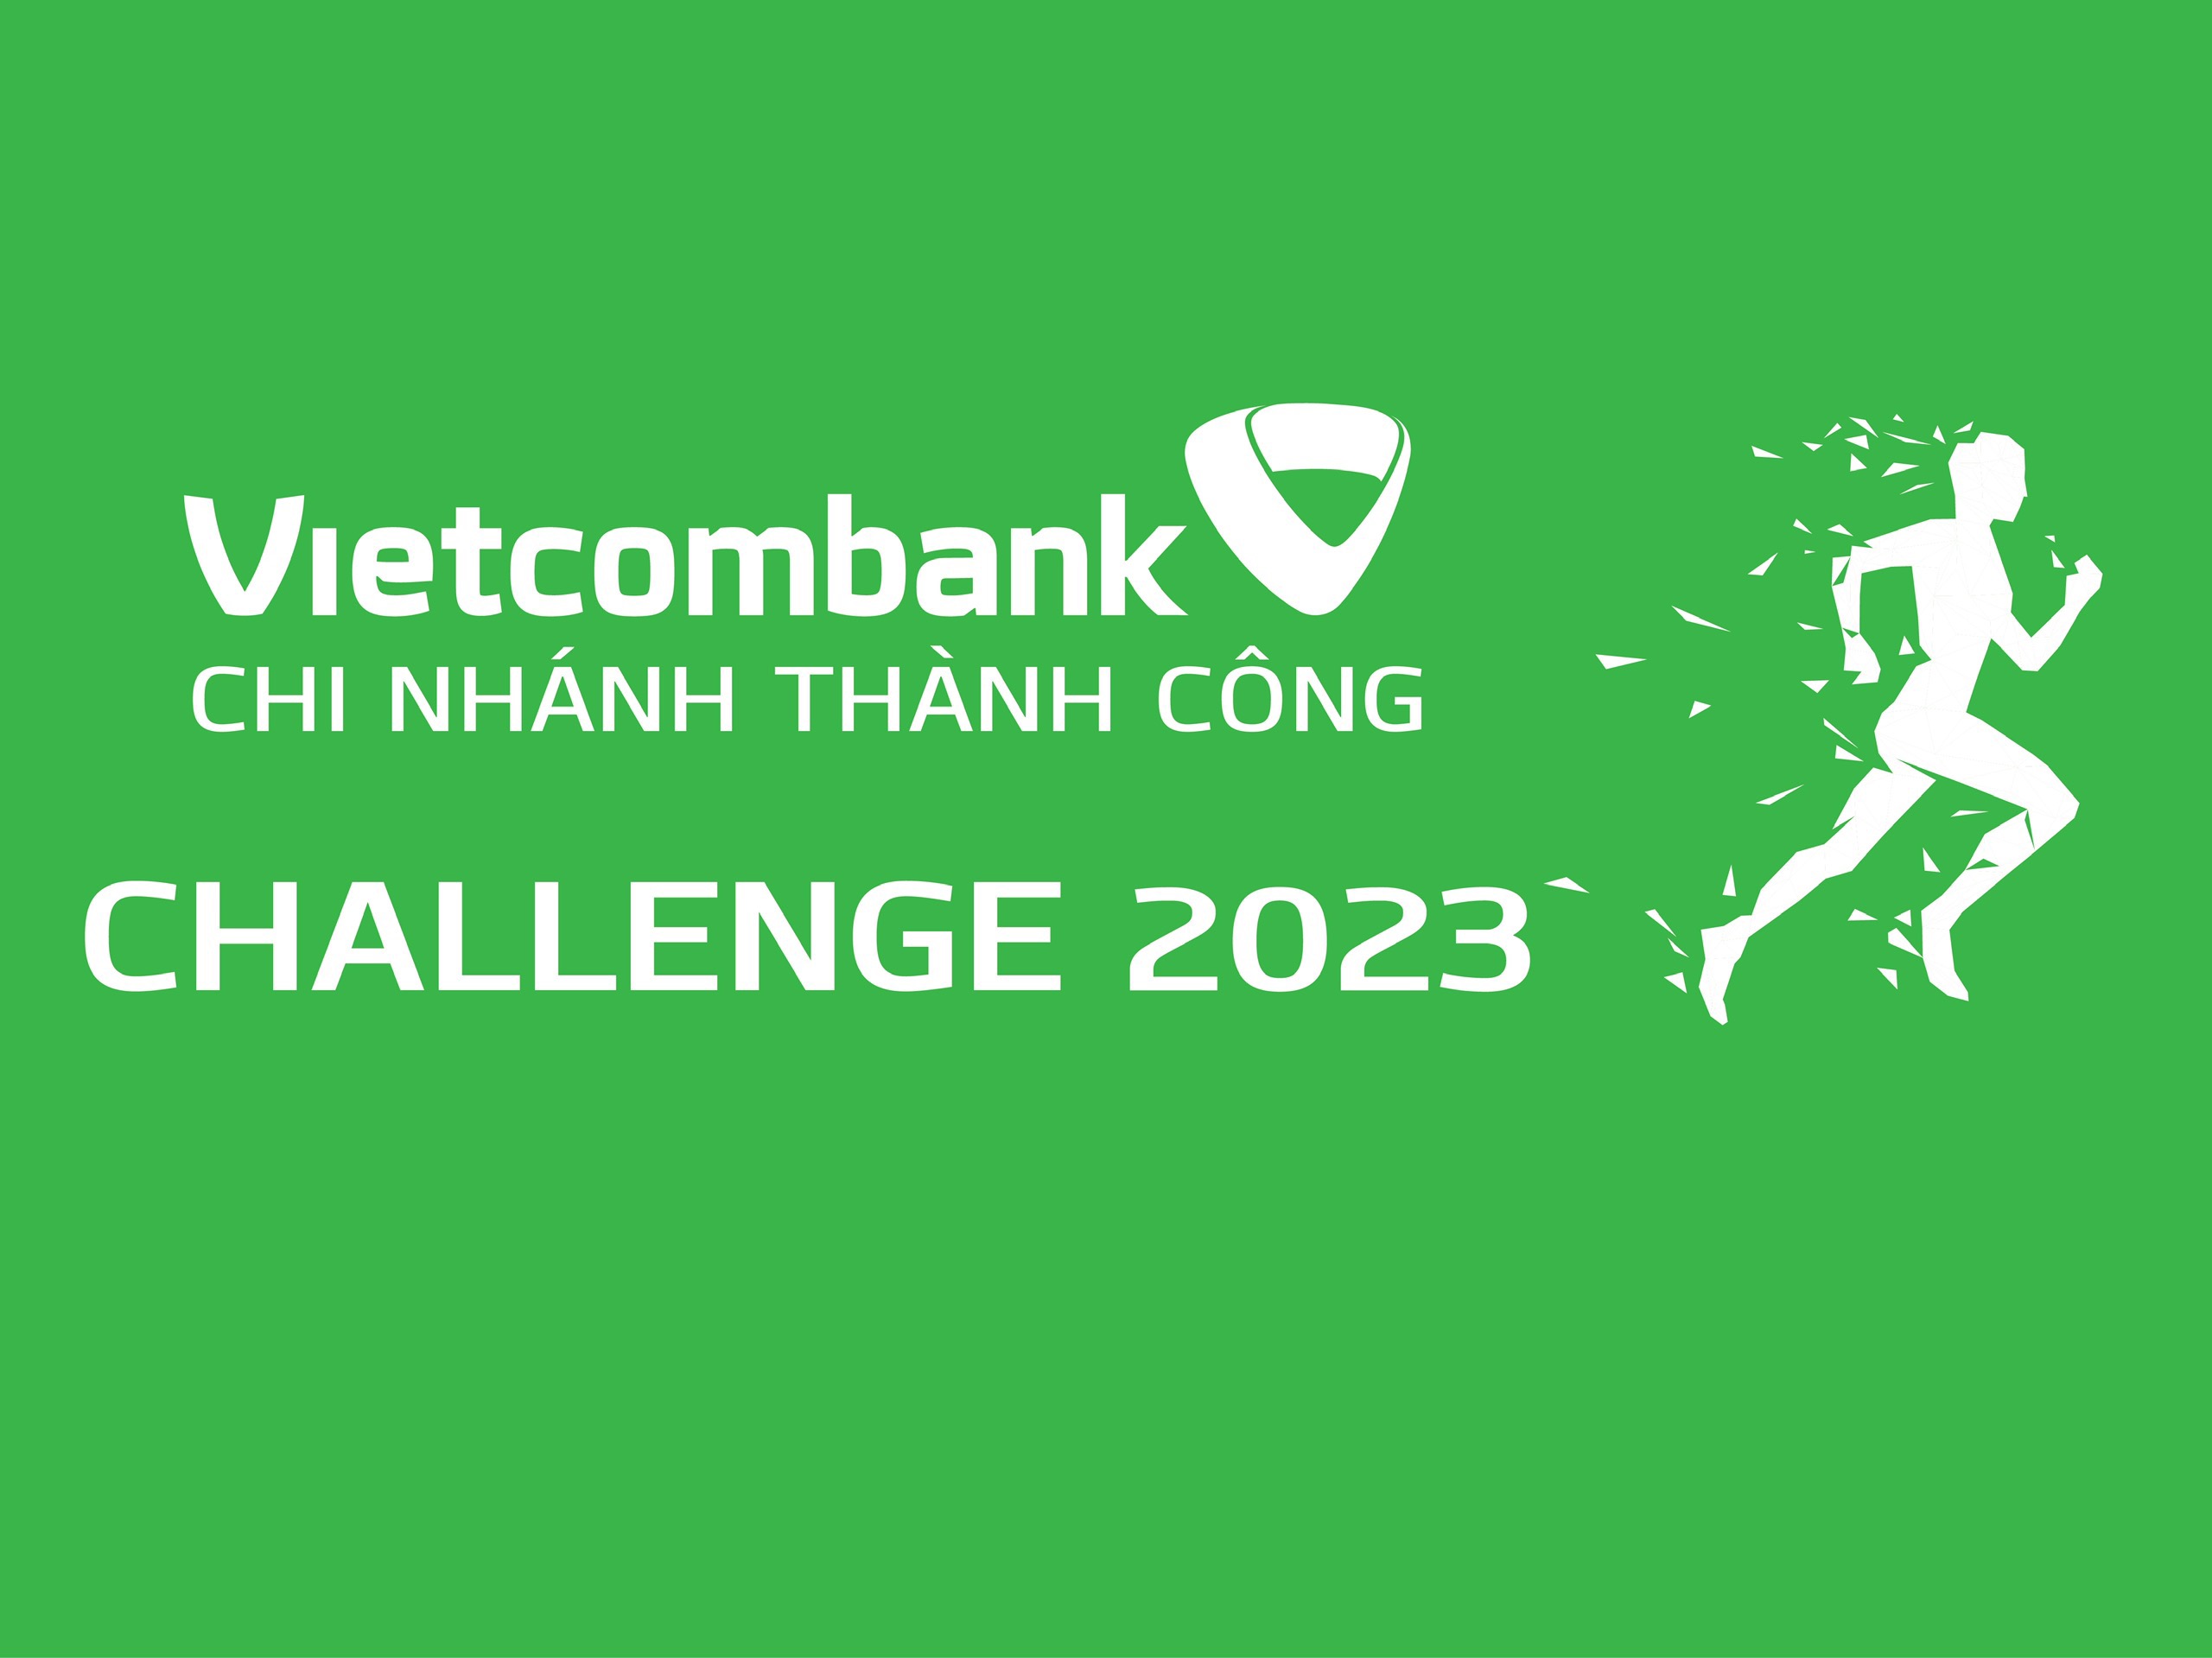 VCB Thành Công Challenge 2023 - Tuần 7